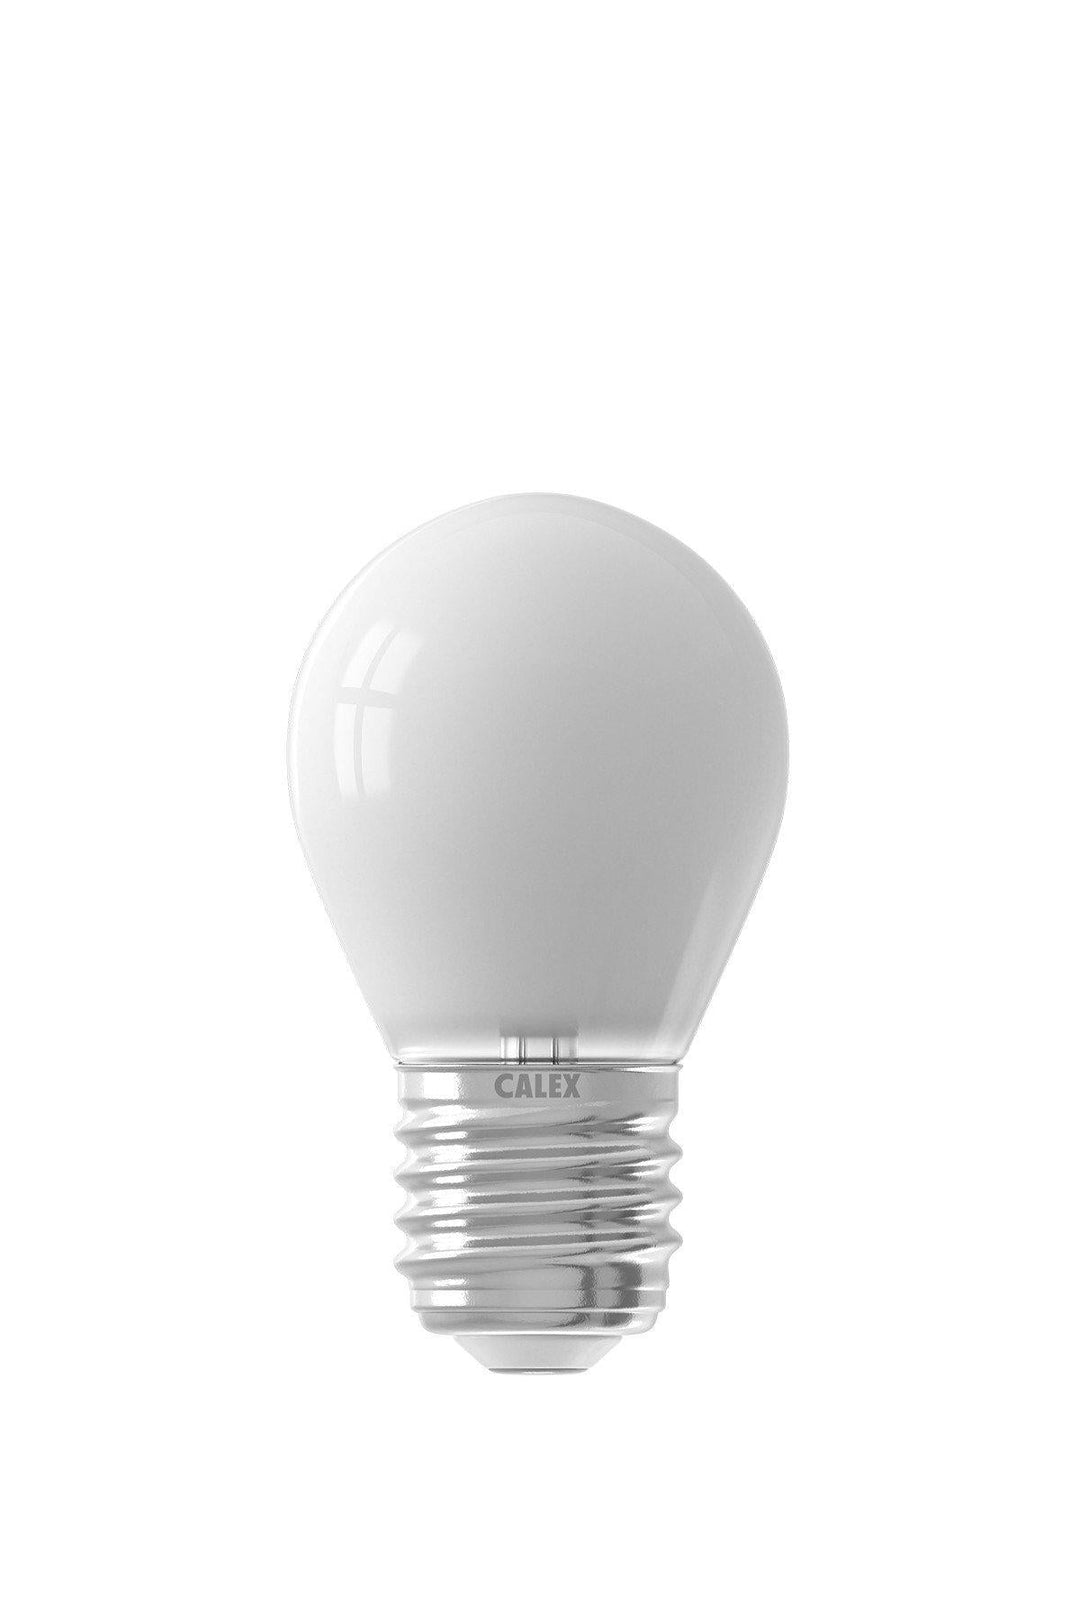 Calex 429052 | LED Softline Spherical Bulb | E27 | P45 | 4.5W | Smart Bulb